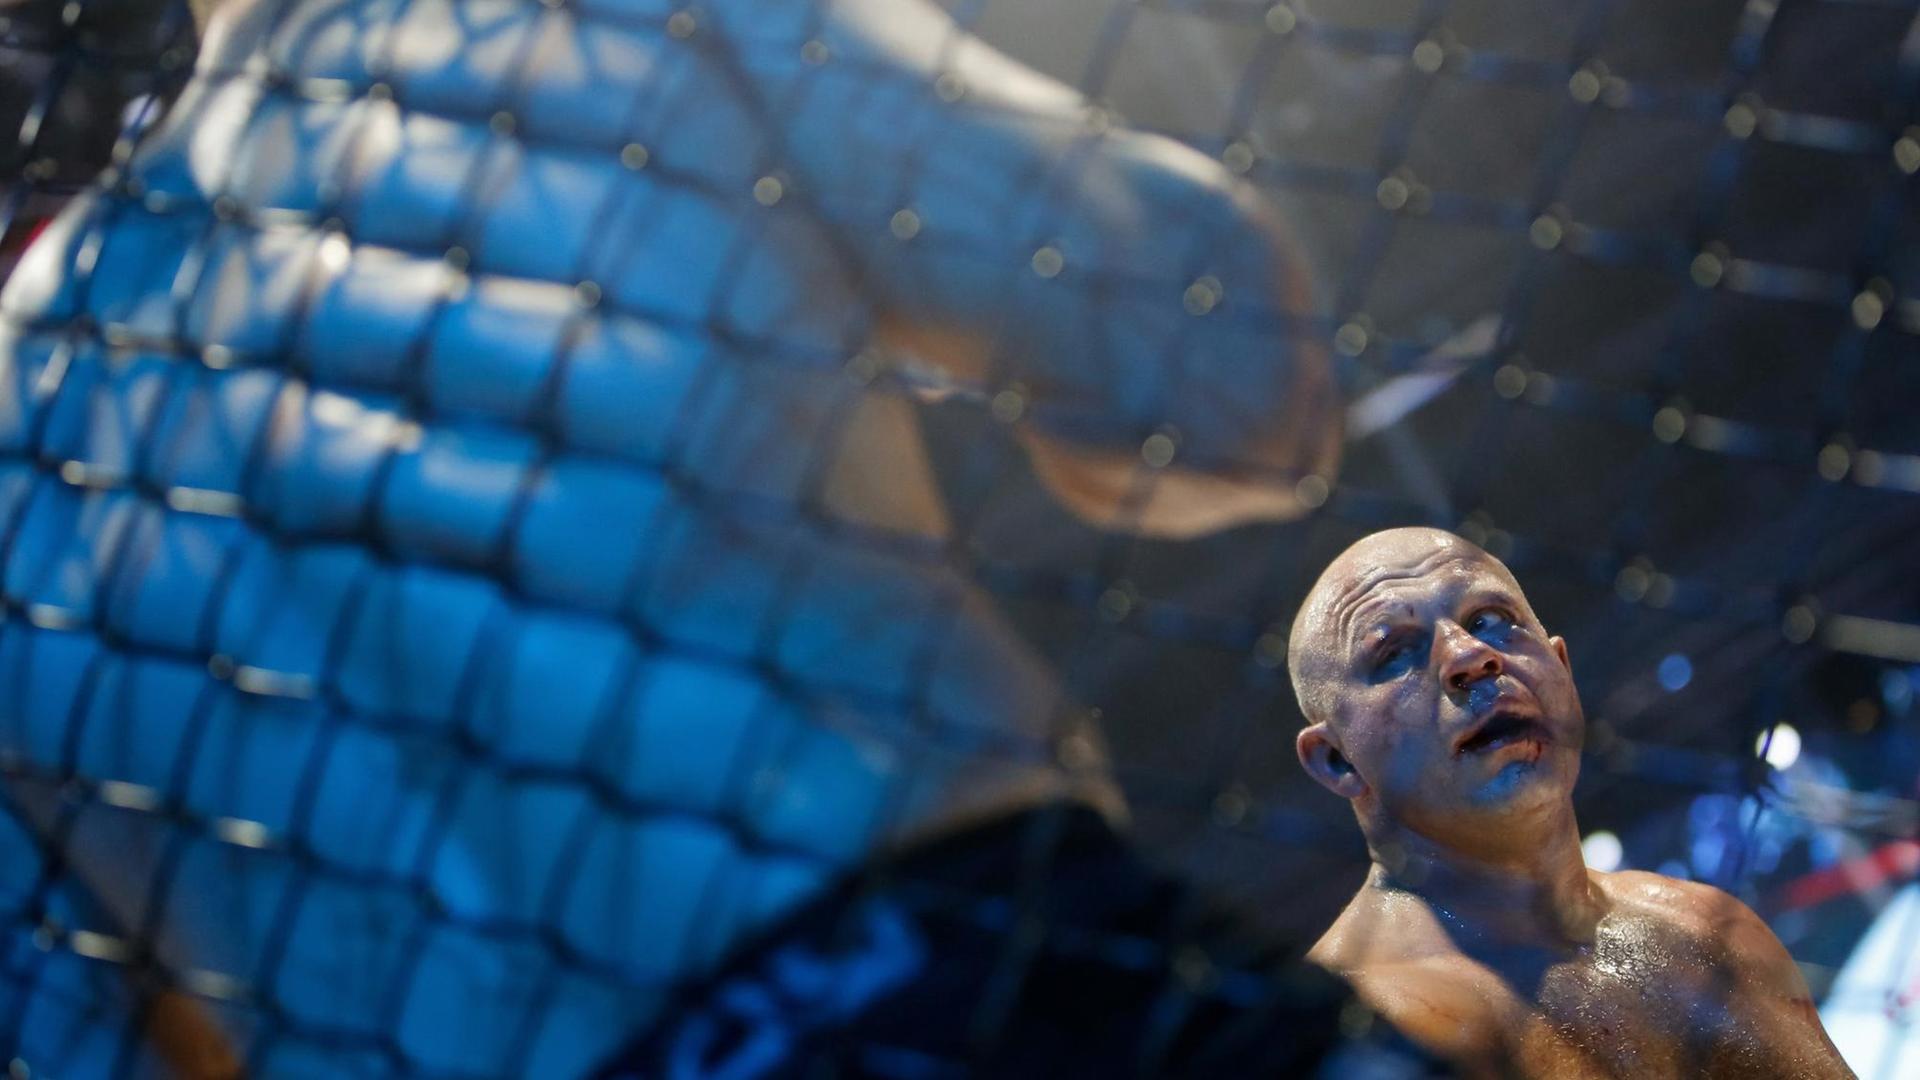 Der MMA-Kämpfer Fedor Emelianenko aus Russland während eines Kampfes.